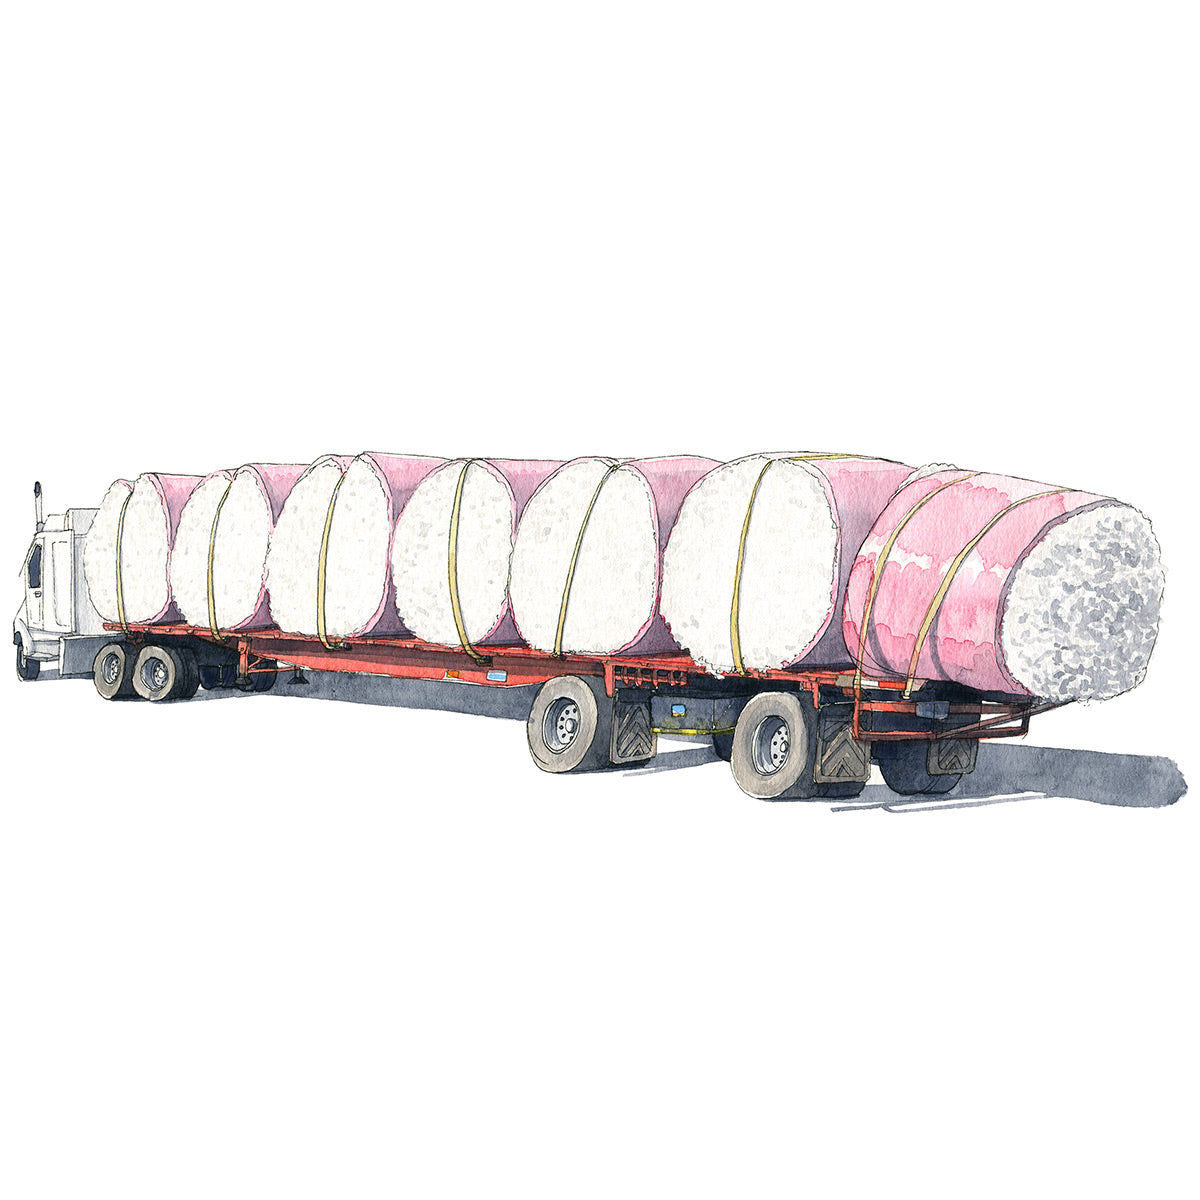 Truck 14 Cotton Bales - Original Art